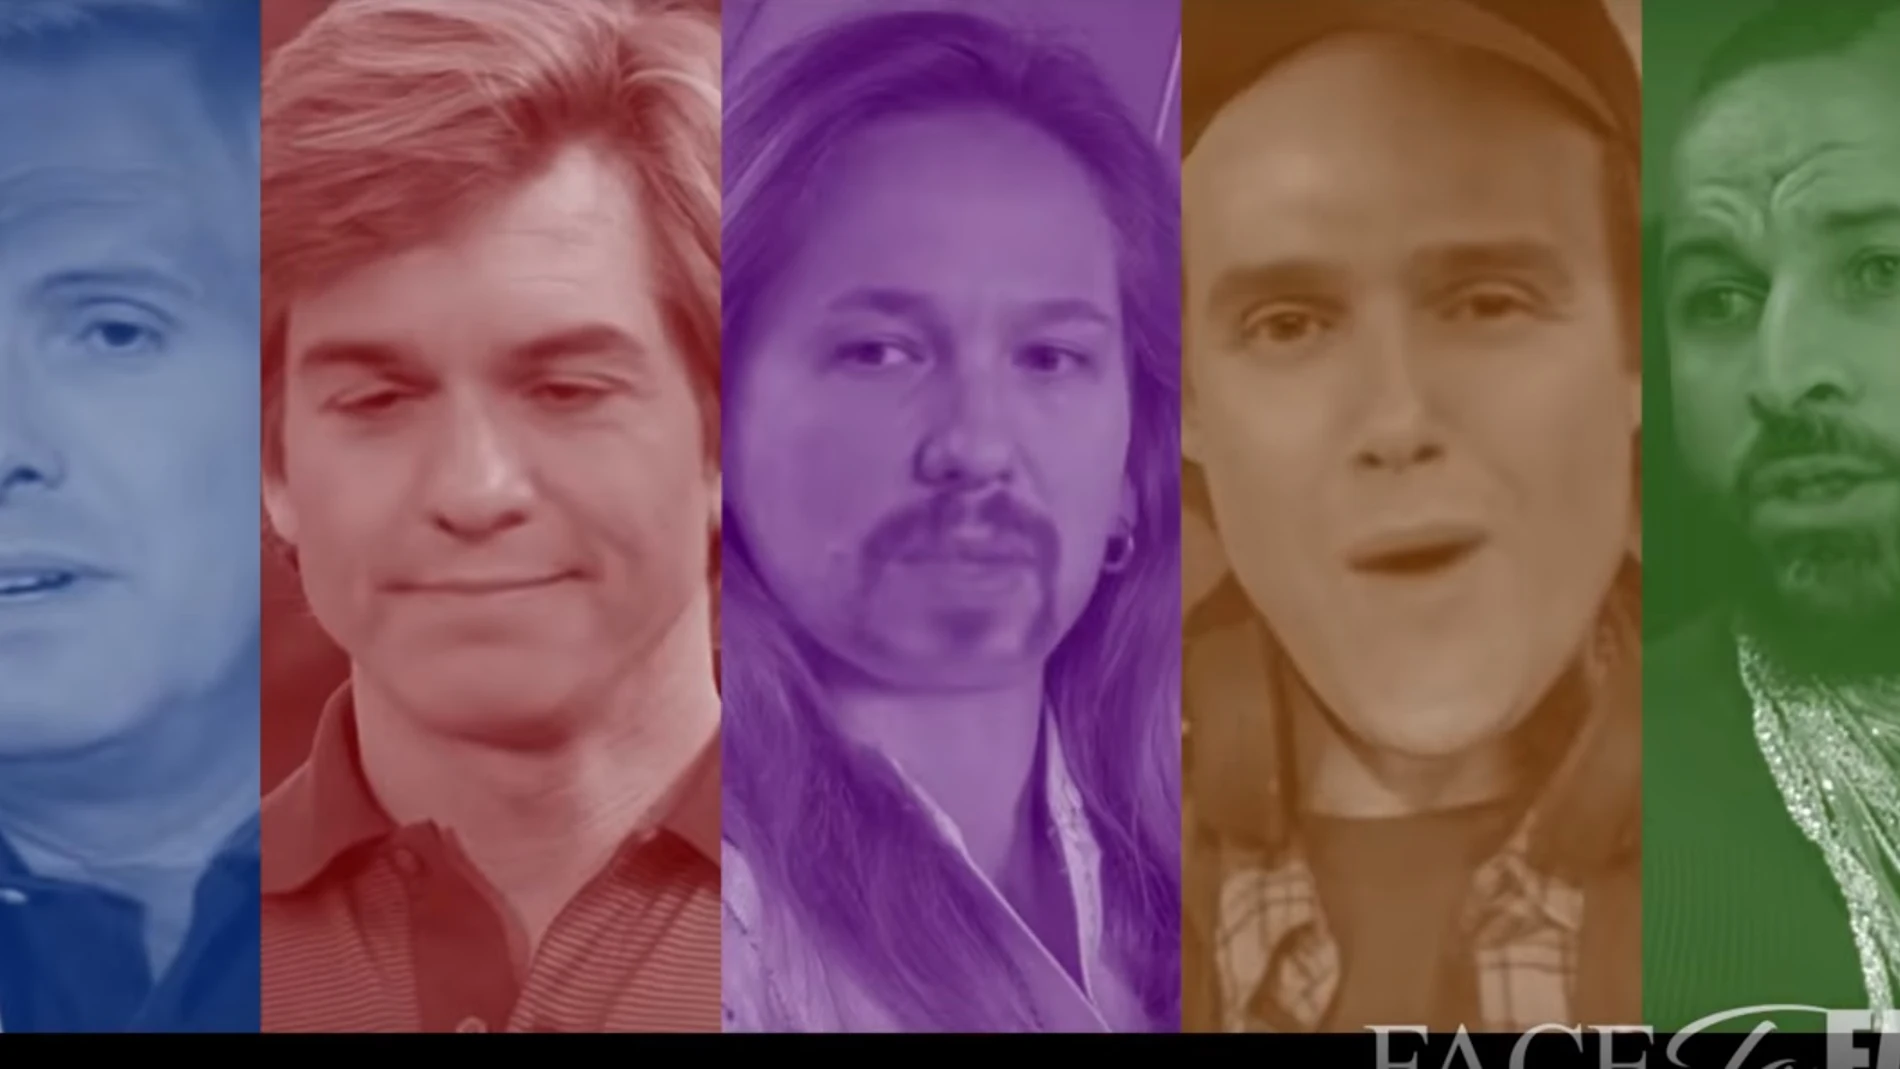 Captura de los cinco políticos que aparecen en el deepfake